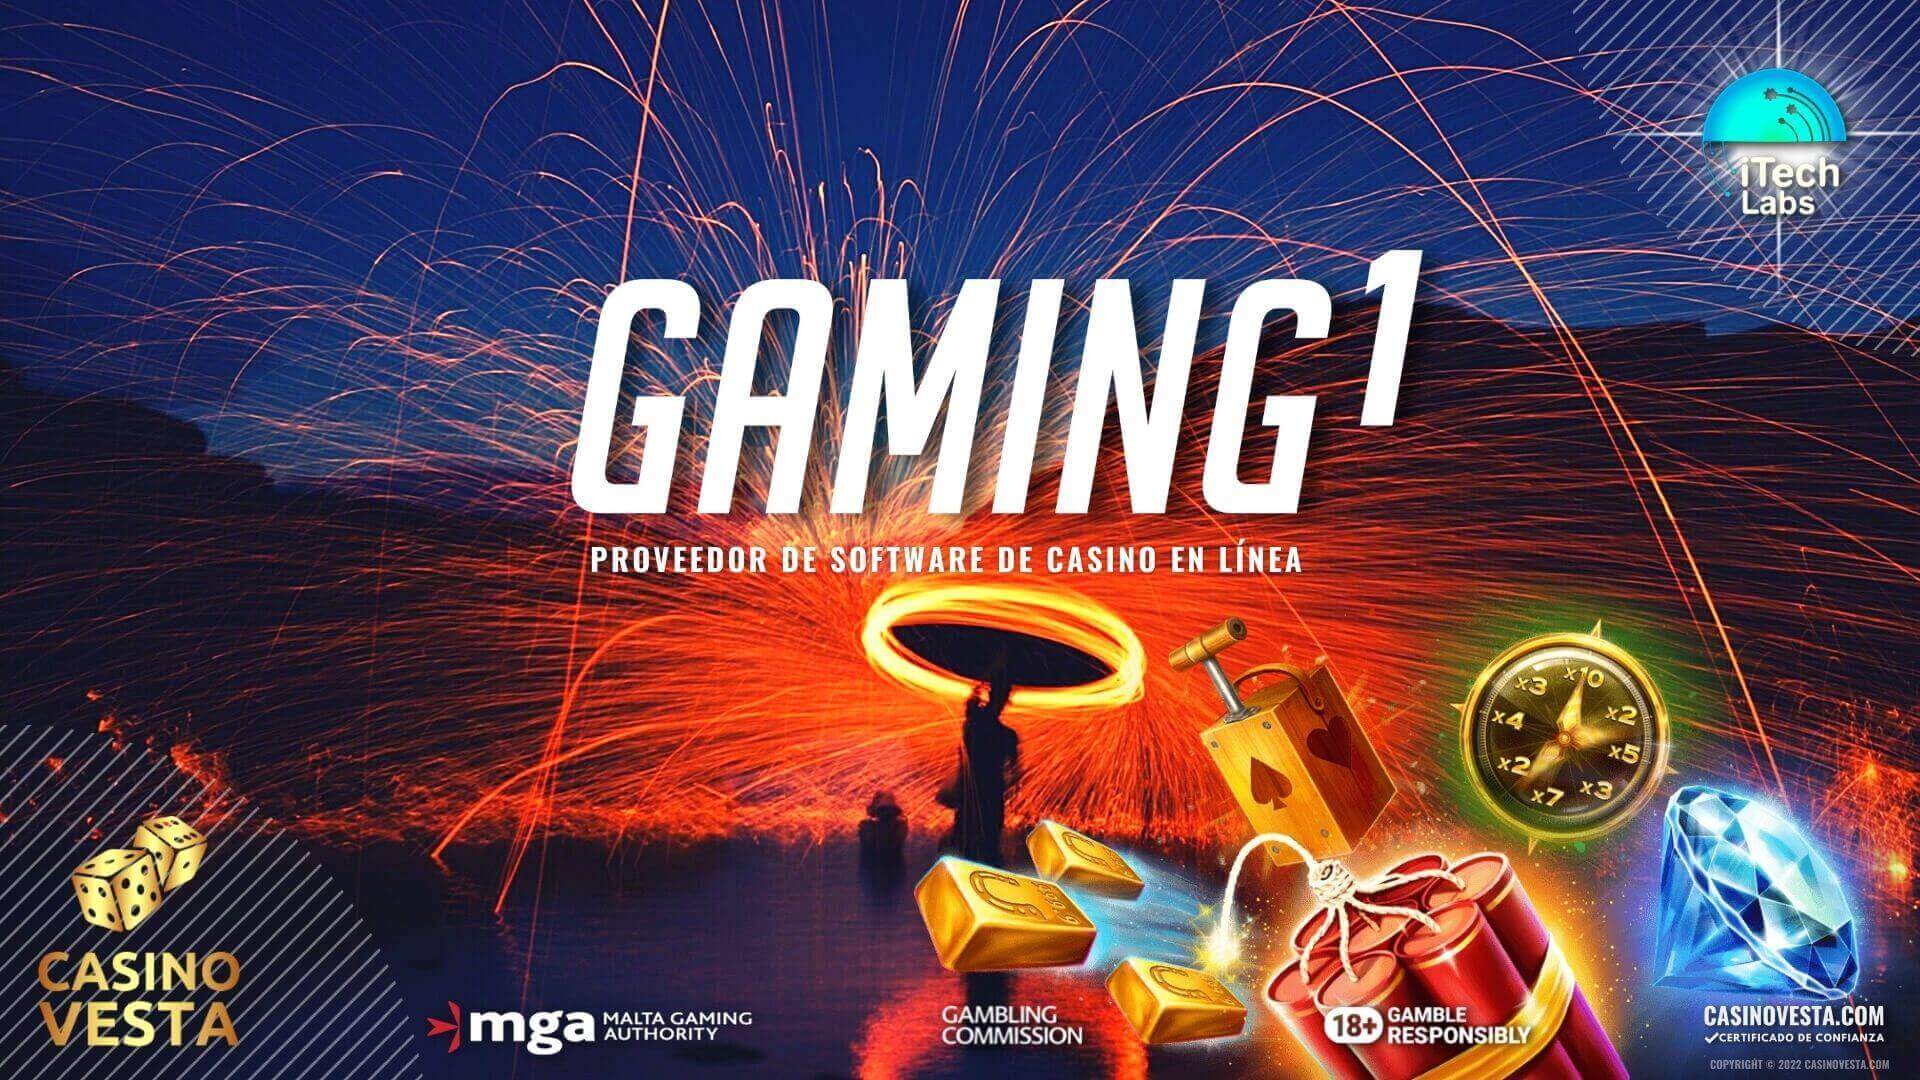 Proveedor de software de casino en línea Gaming1